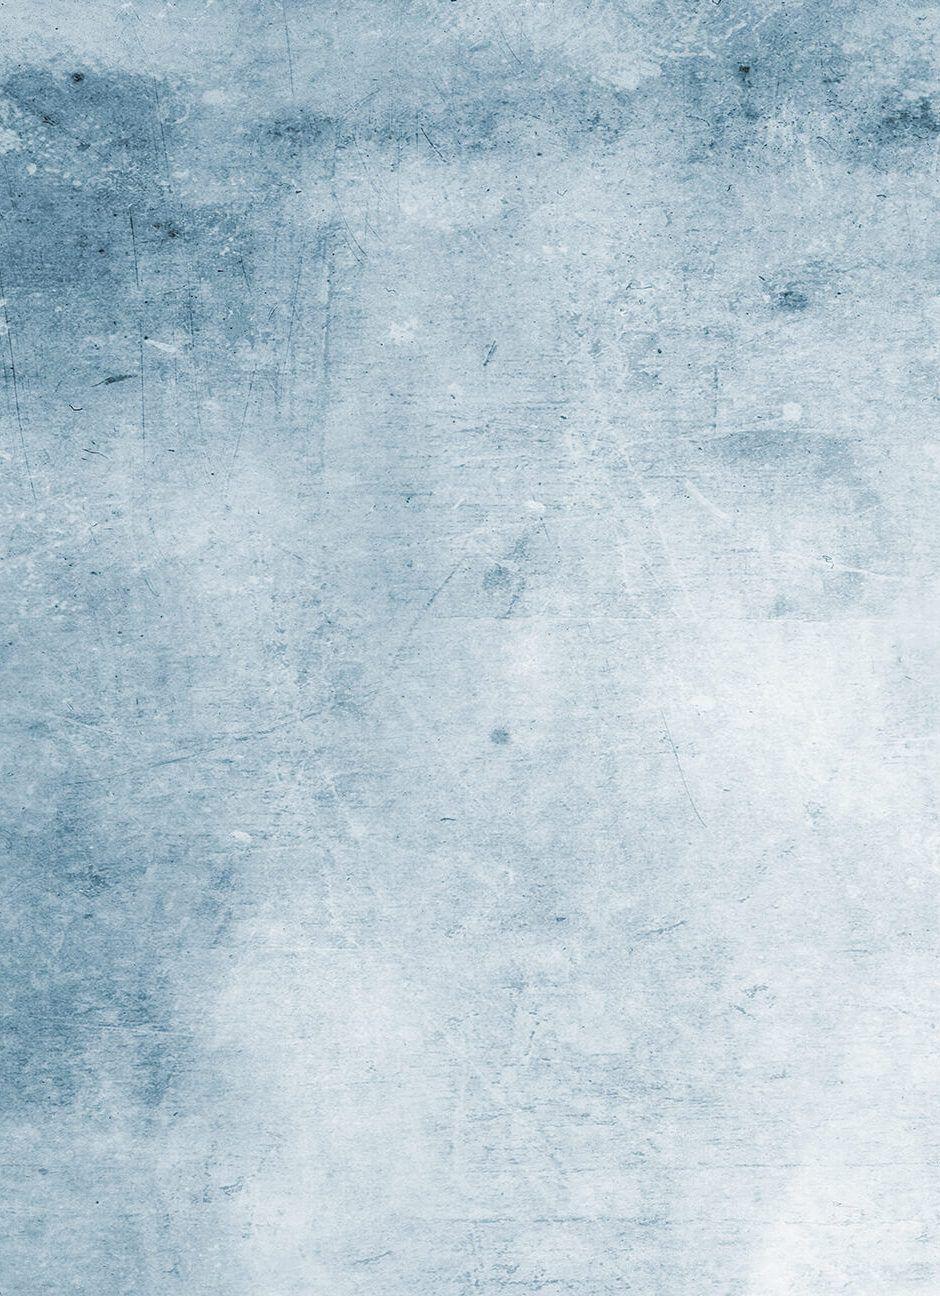 940x1296 Bức tranh tường màu nước Grey Grunge.  Hình nền màu xám xanh, có kết cấu